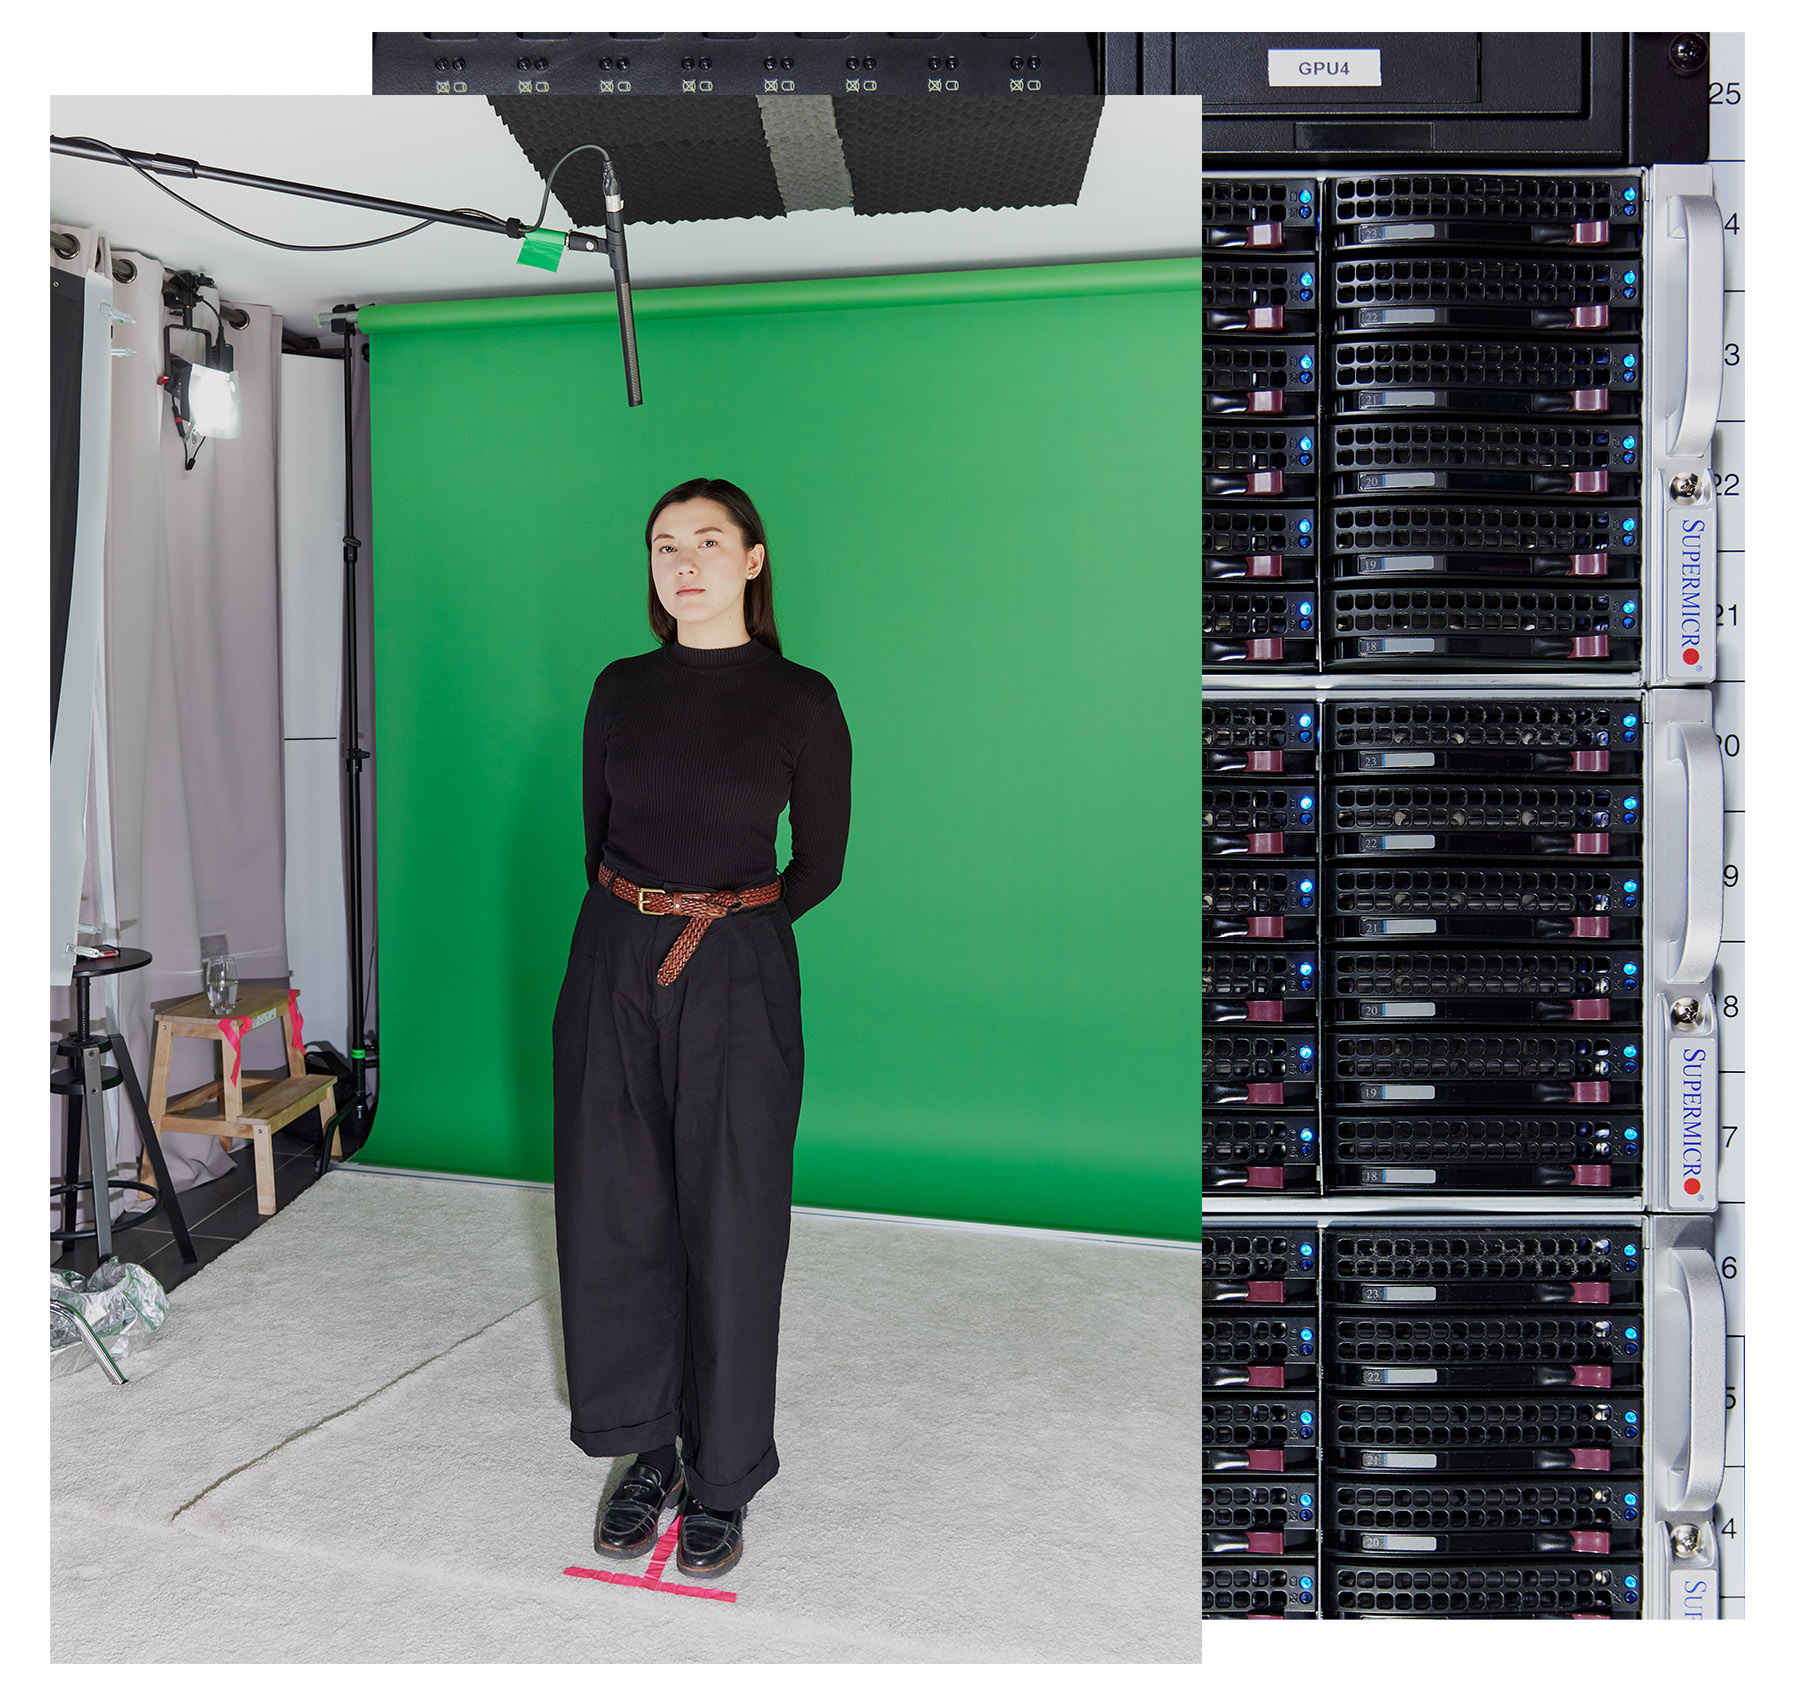 Imagen de Melissa parada en su marca frente a una pantalla verde con bastidores de servidores en la imagen de fondo.